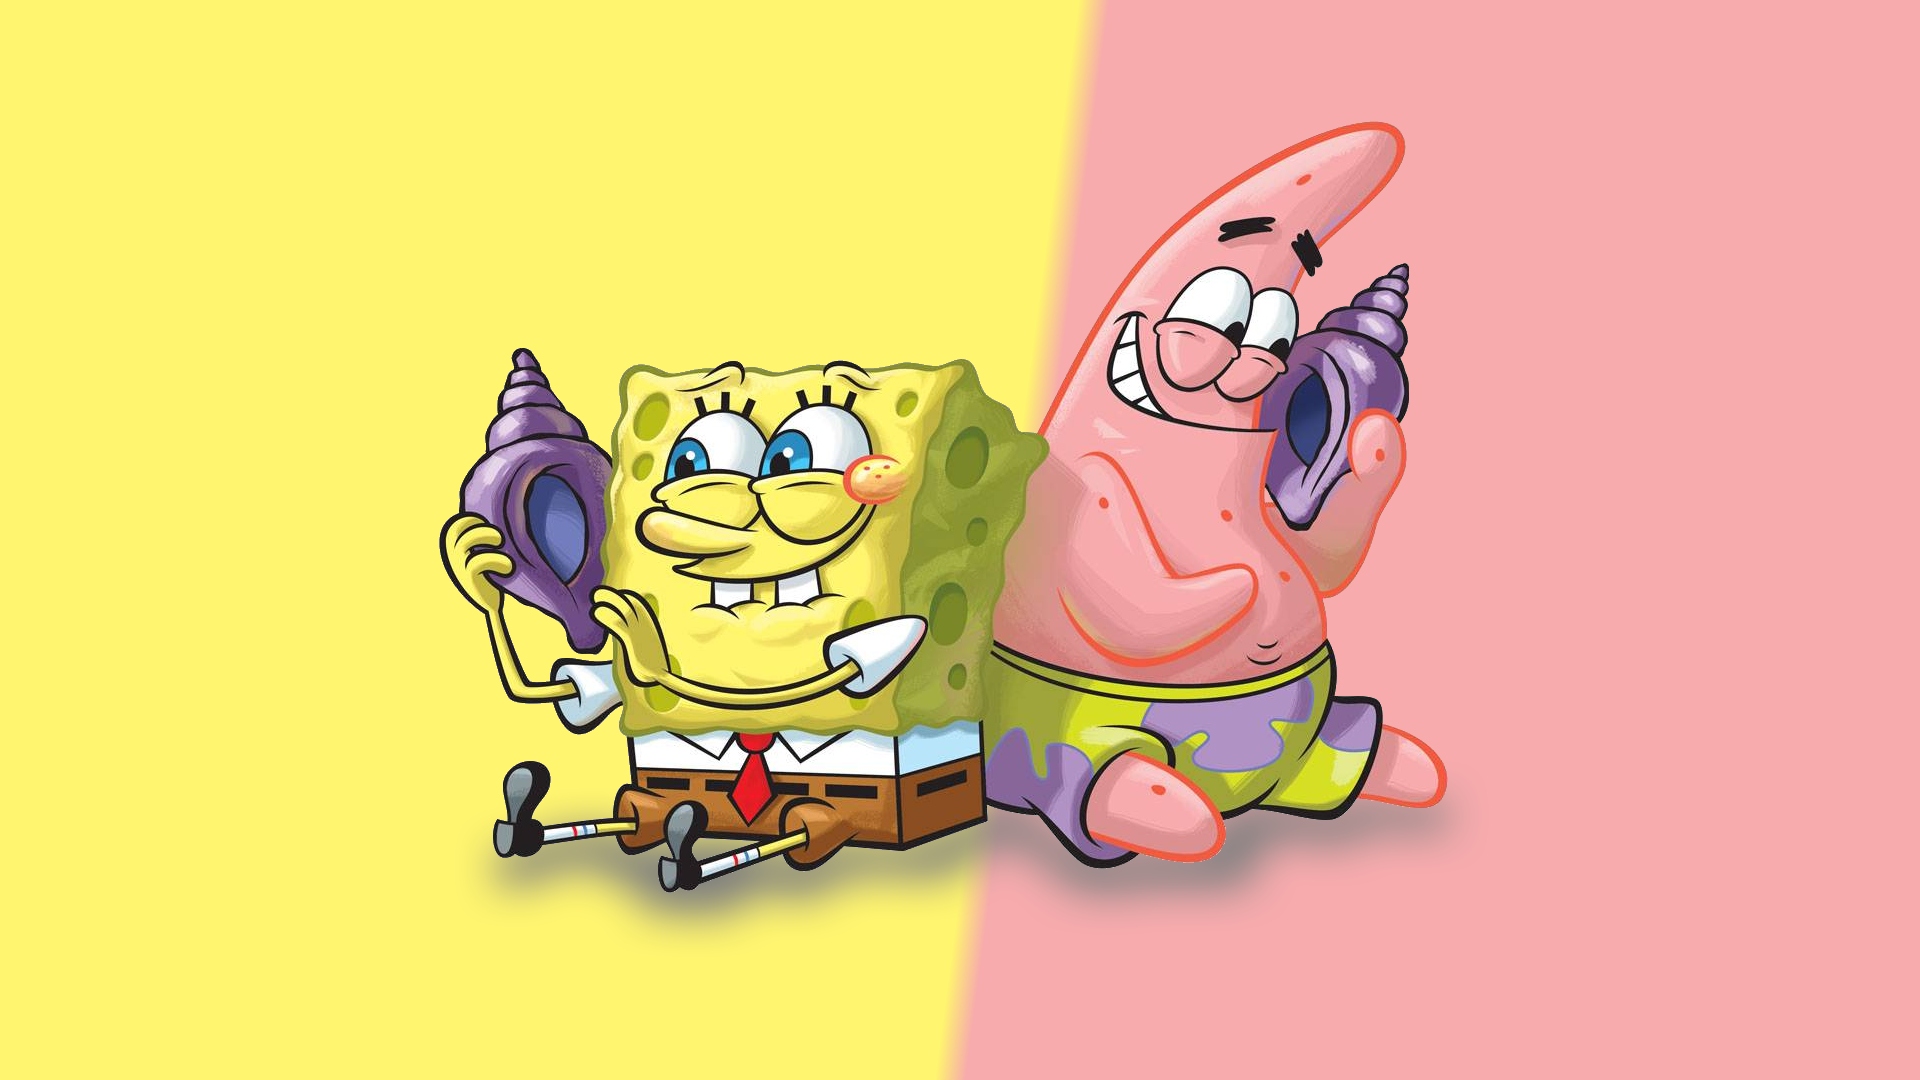 Hãy tải về miễn phí bộ sưu tập hình nền máy tính độc đáo với chủ đề SpongeBob và Patrick. Những hình ảnh đầy màu sắc và hài hước sẽ giúp gia tăng sự thư giãn và cảm giác thoải mái cho người dùng. 